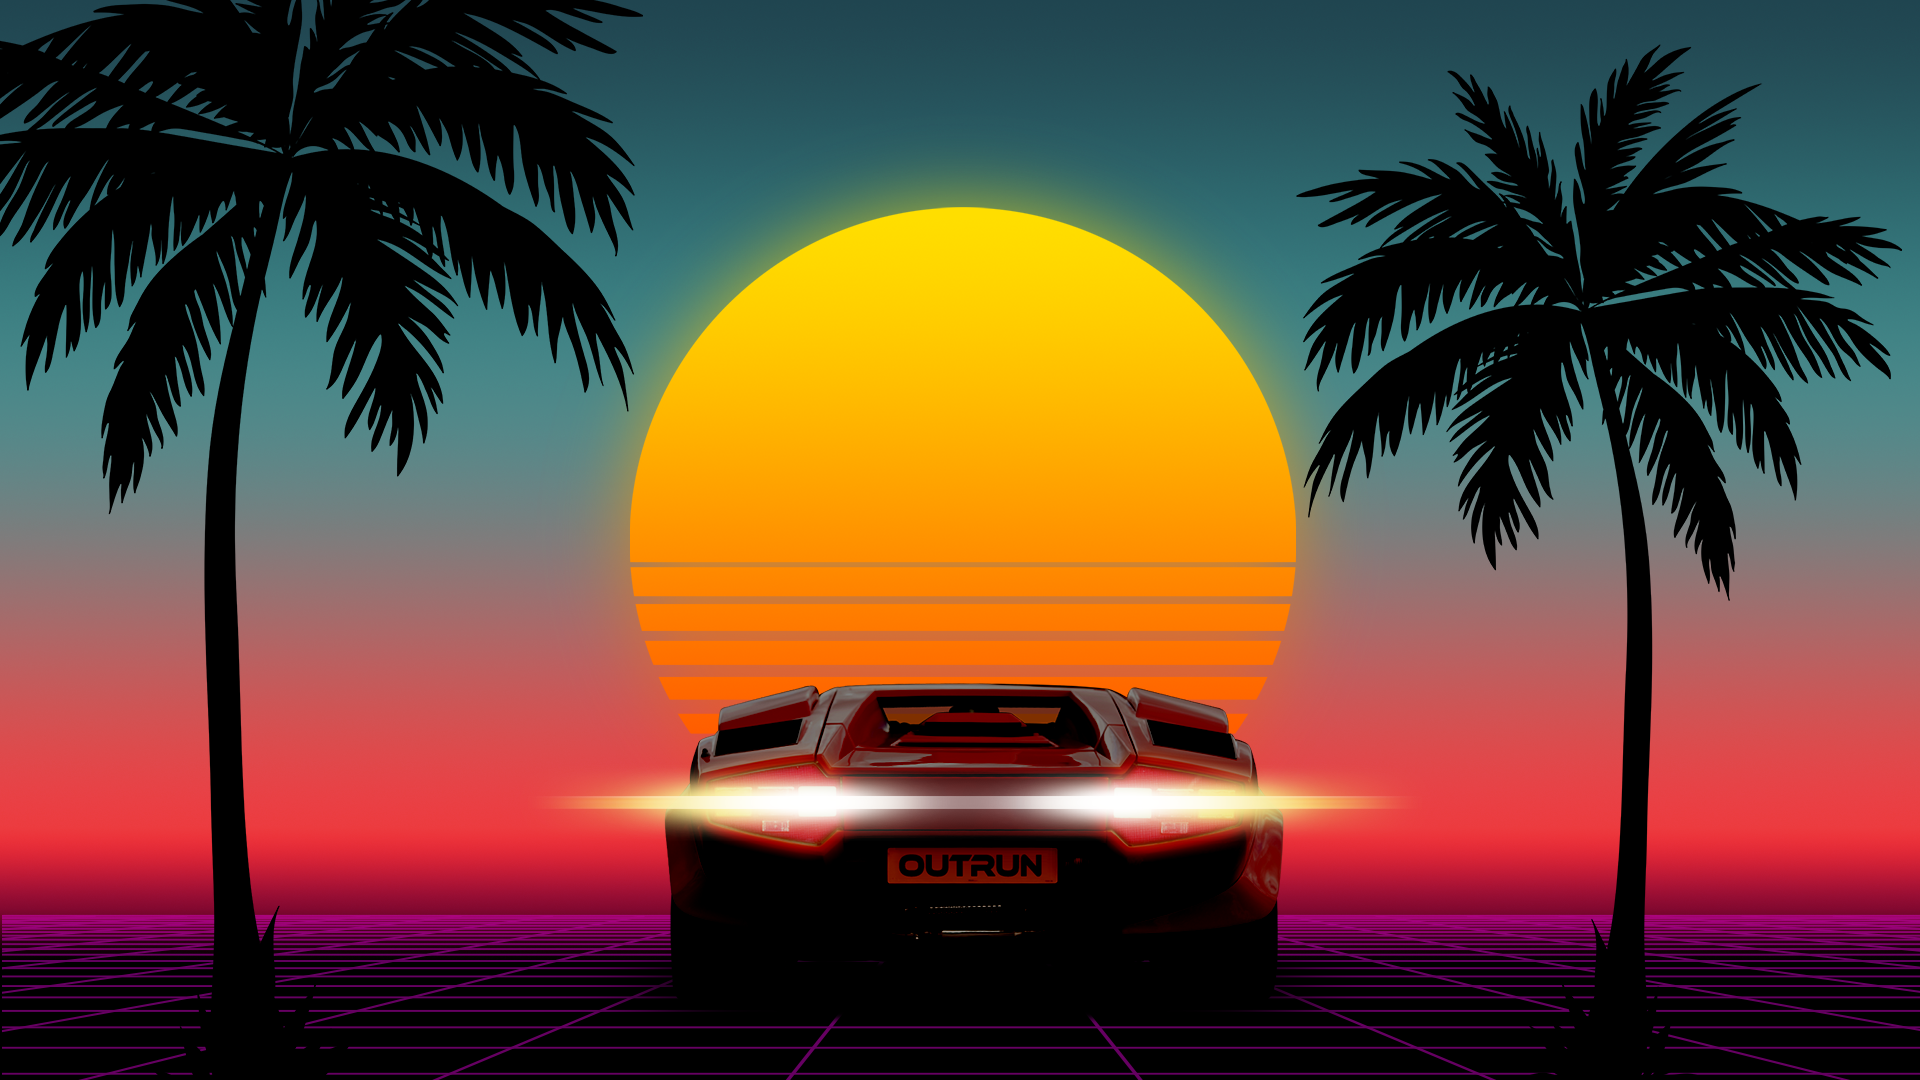 1980s 80s Sunset Car Lamborghini Palm Trees 8 Bit Neon OutRun 1920x1080